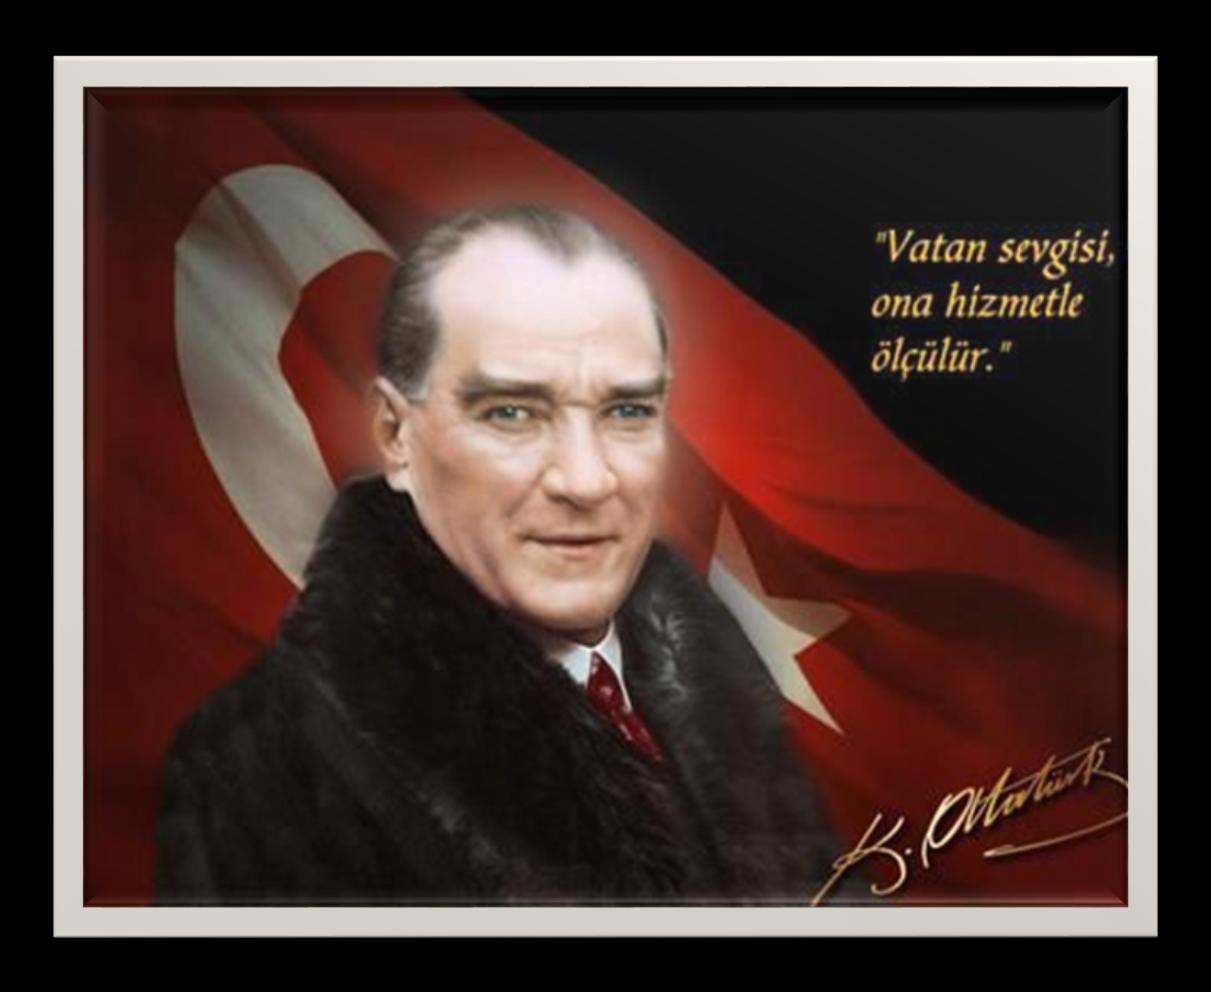 «Özgürlük benim karakterimdir» diyen Mustafa Kemal halkın hürriyetini sağlamış, ekonomik